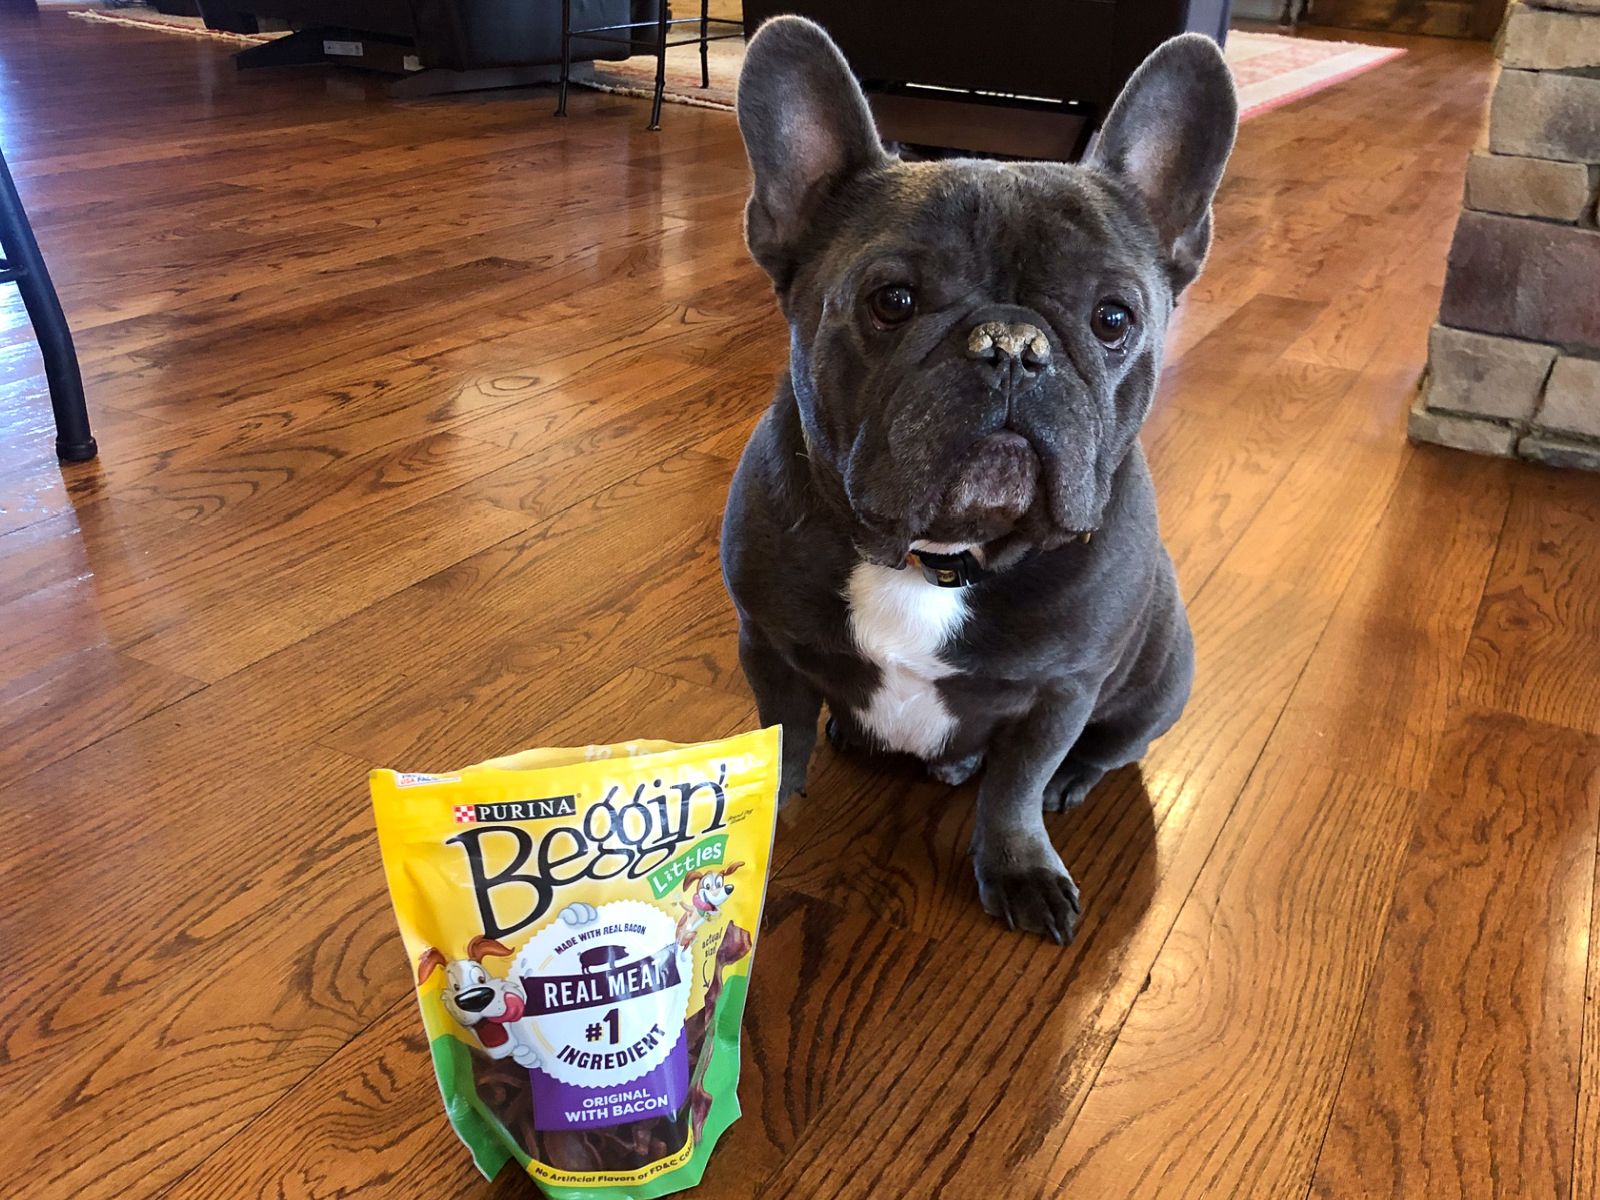 Purina Beggin’ Dog Snack Just $2.15 Per Bag At Publix